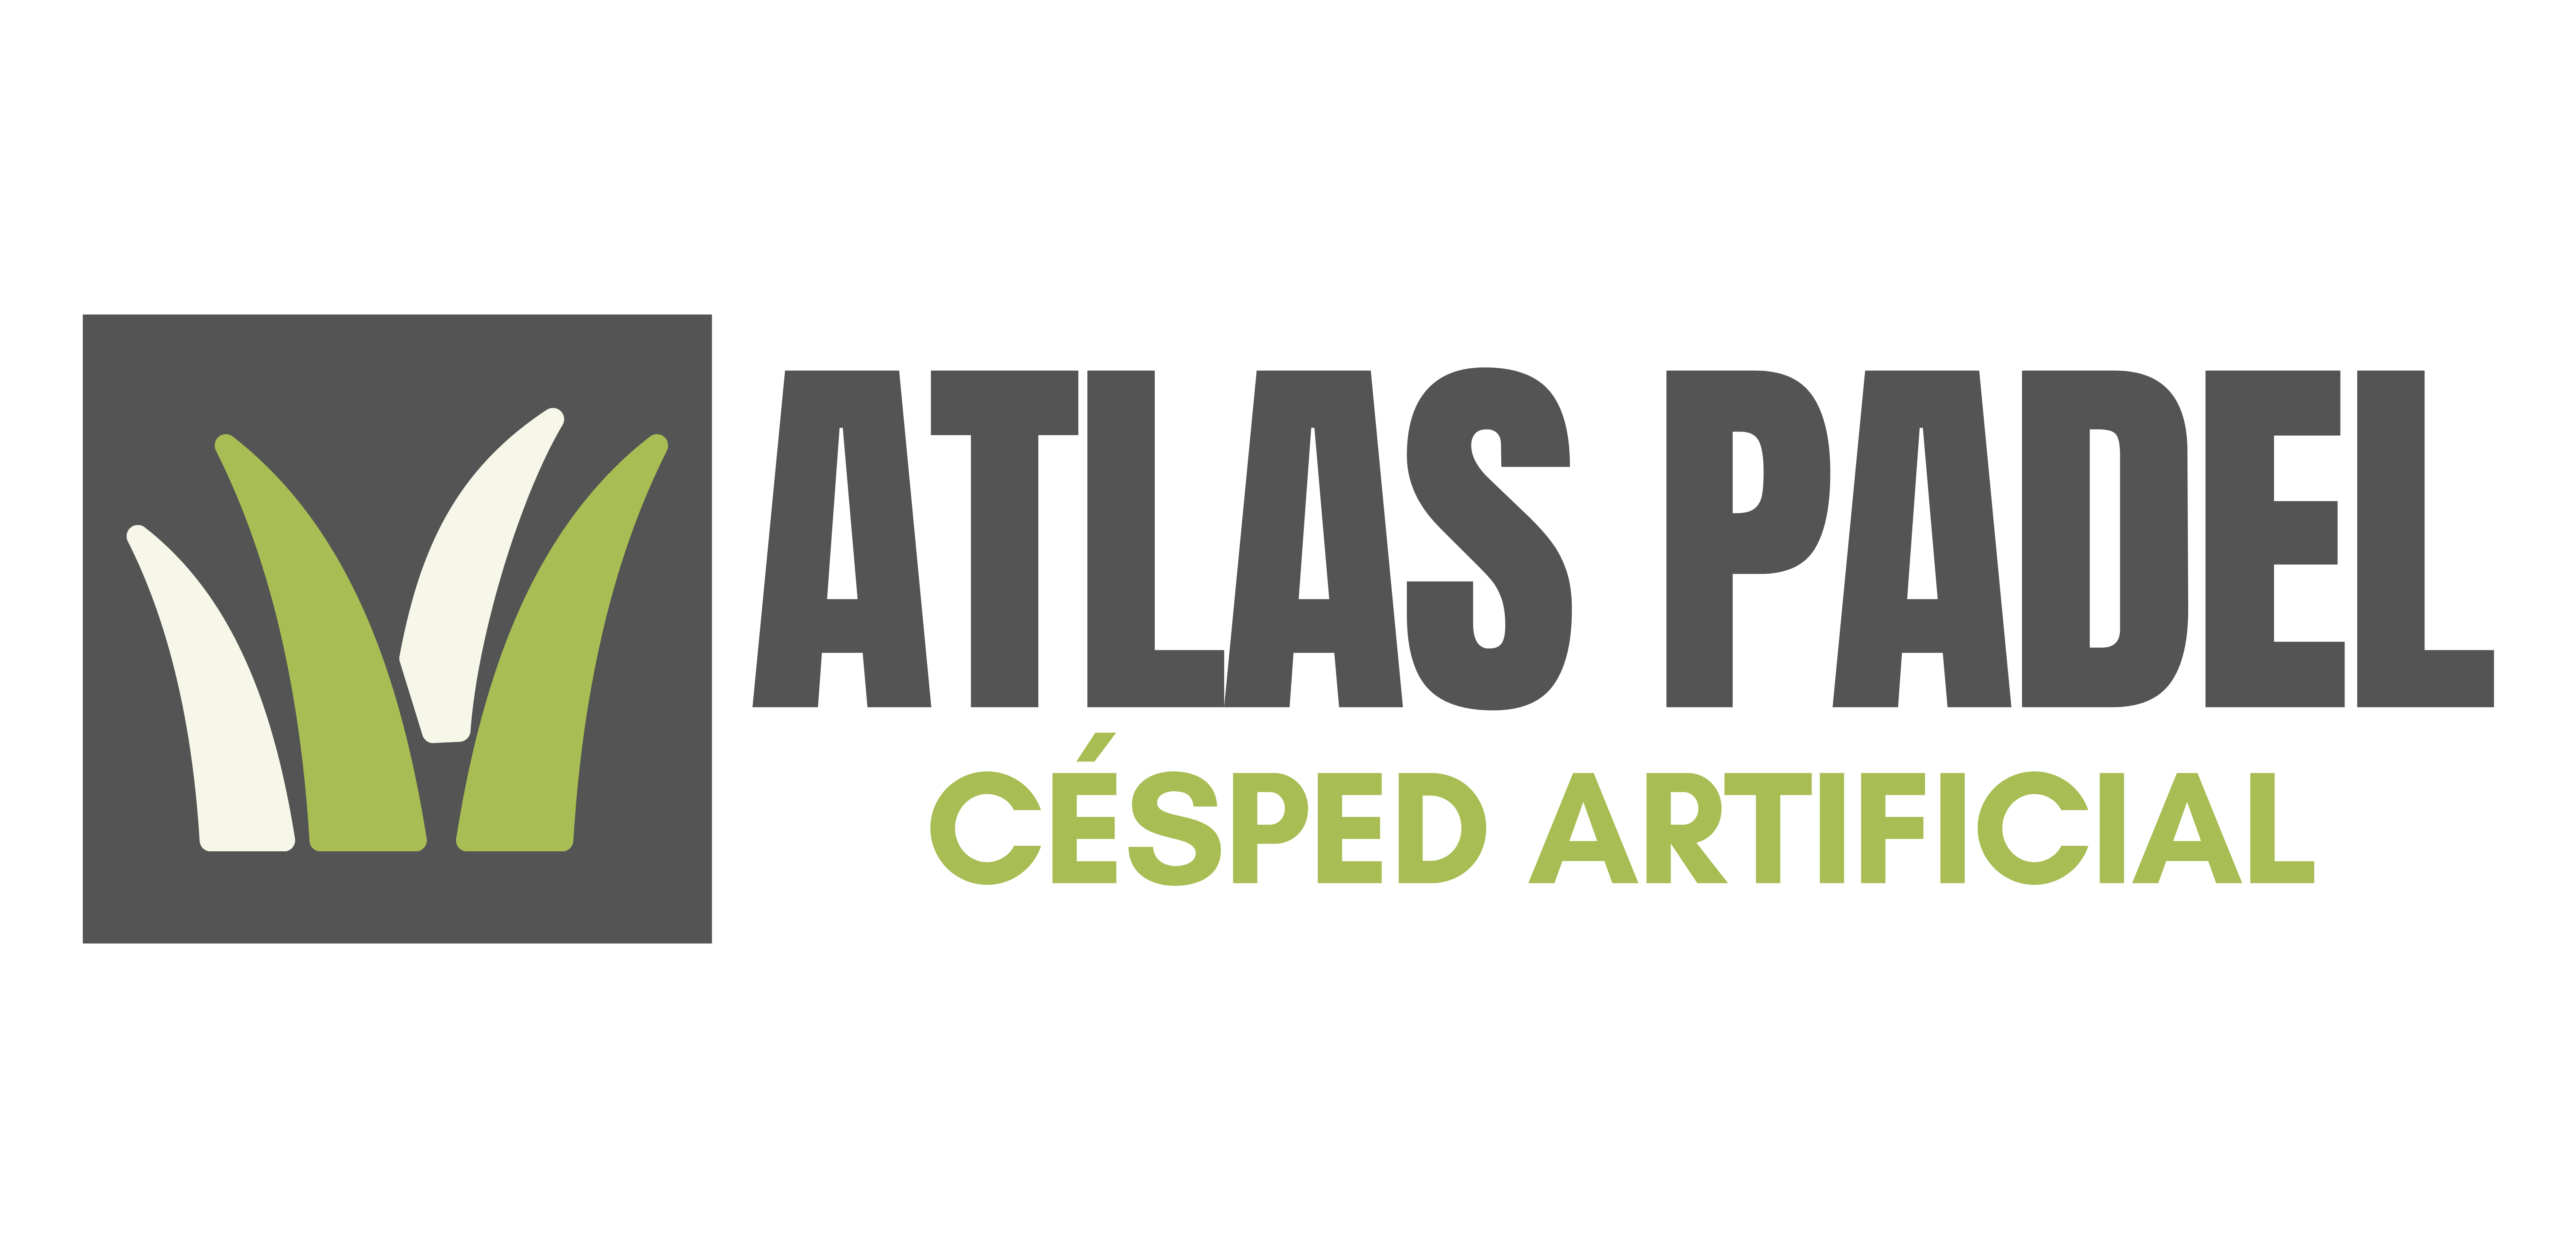 atlas padel